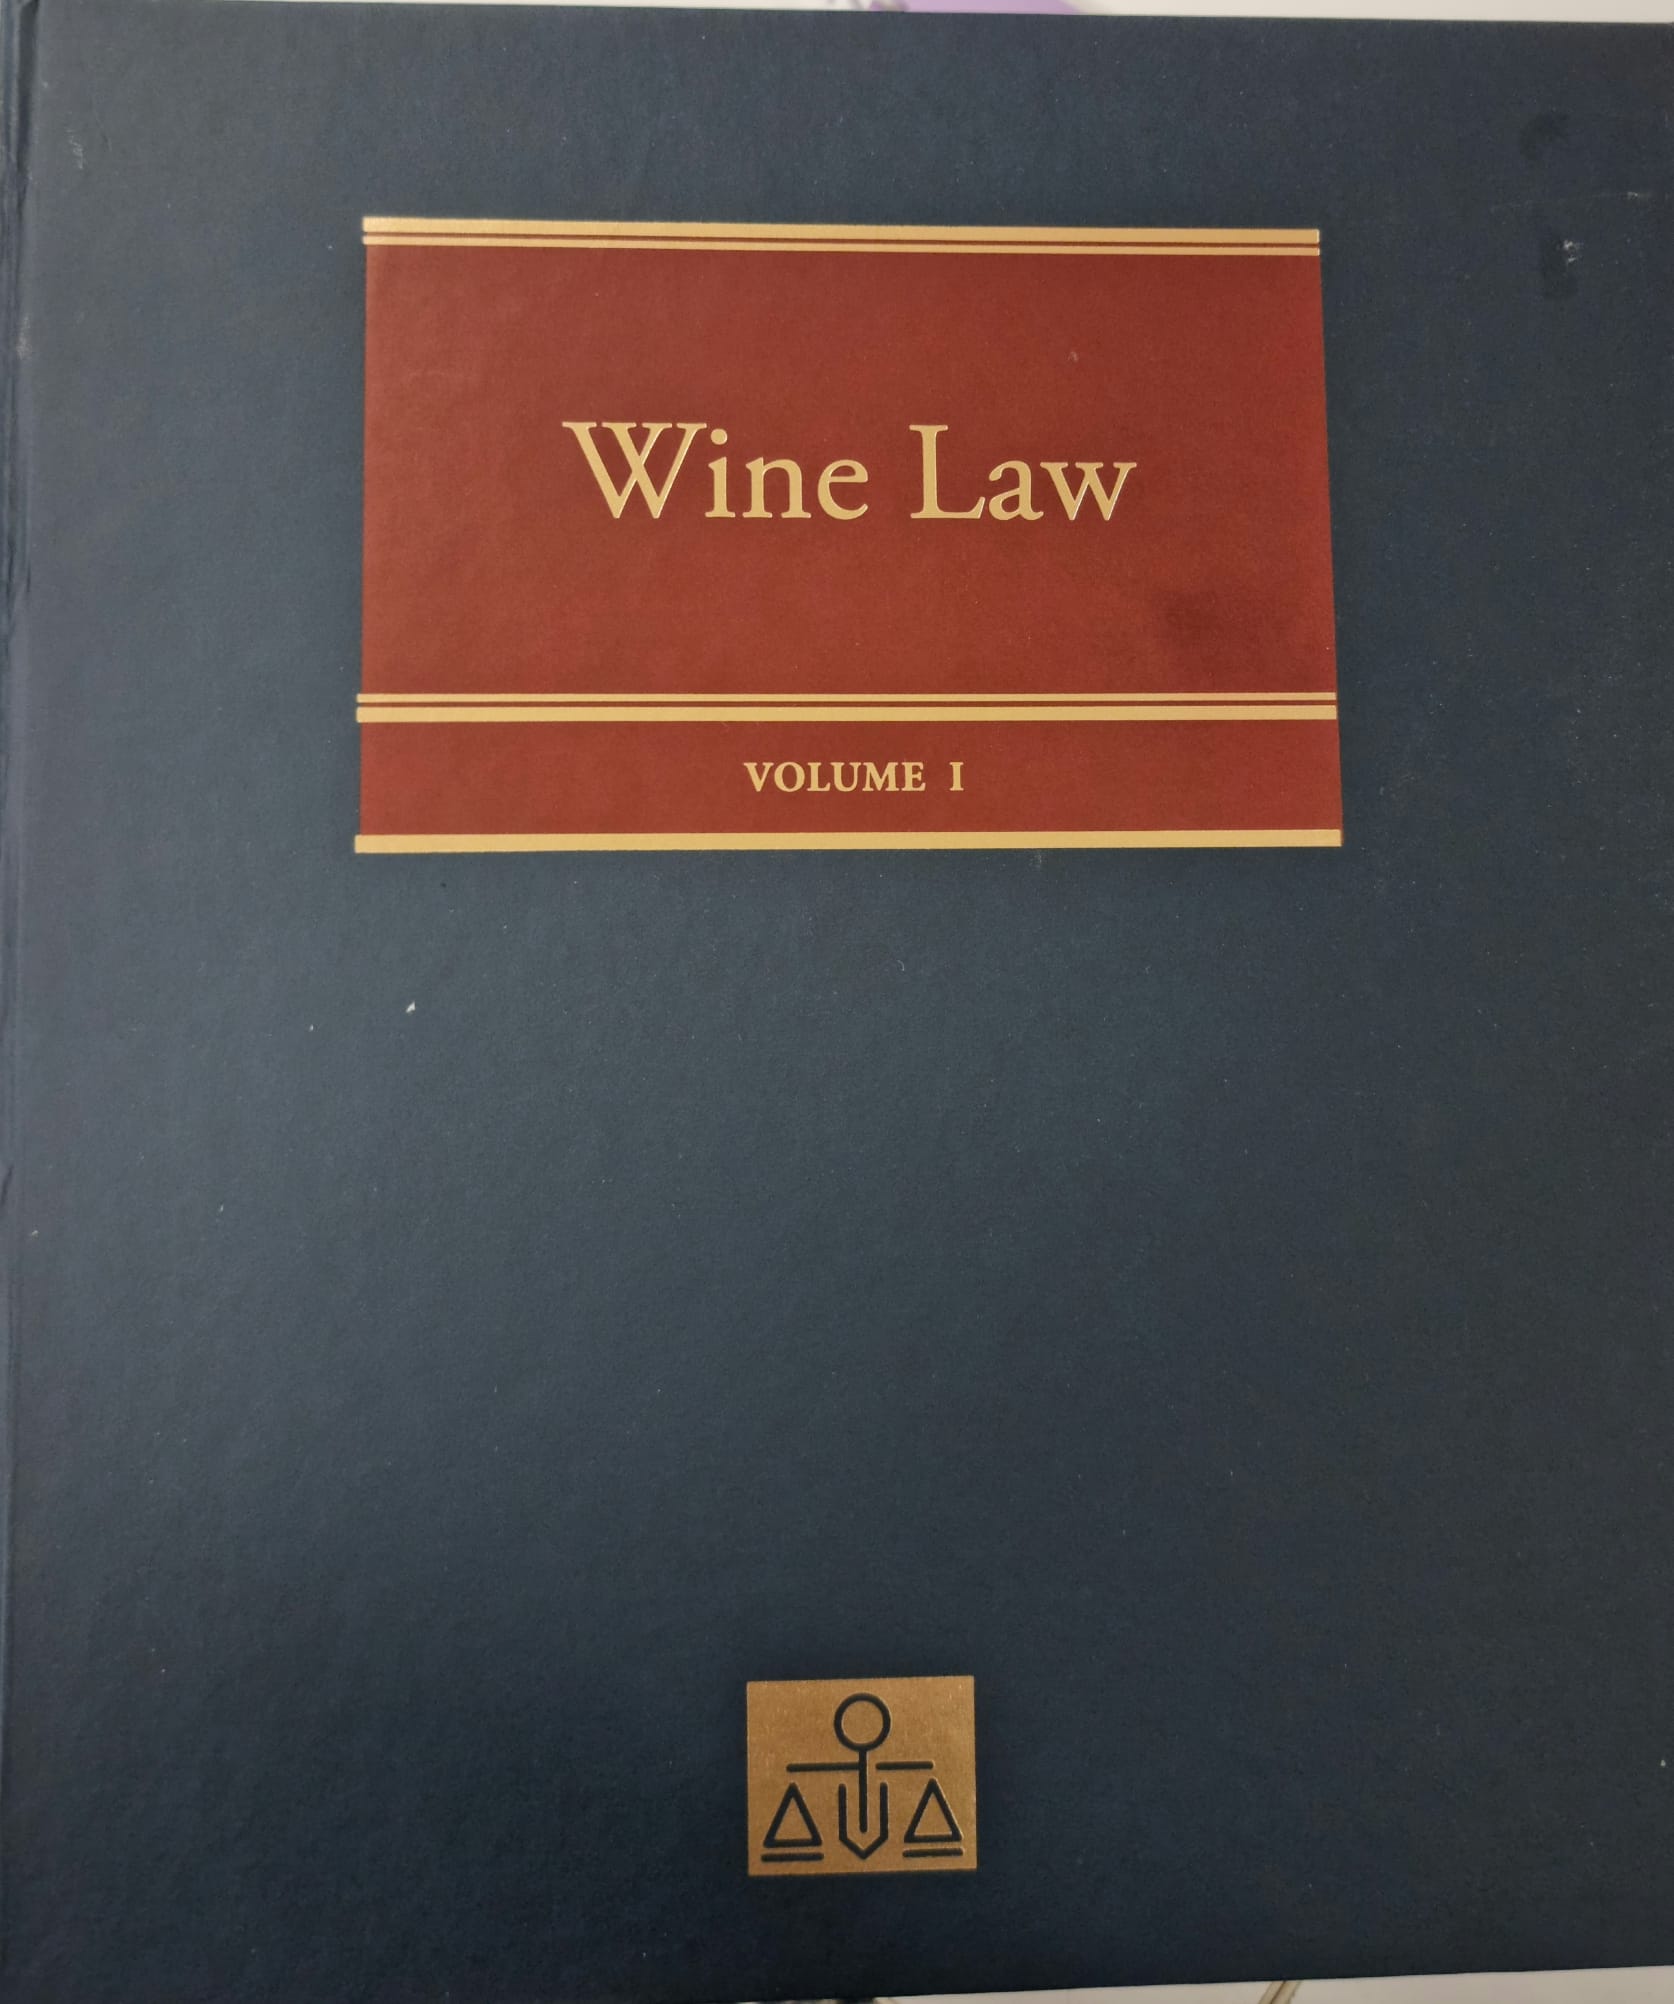 Imagen de portada del libro Wine law